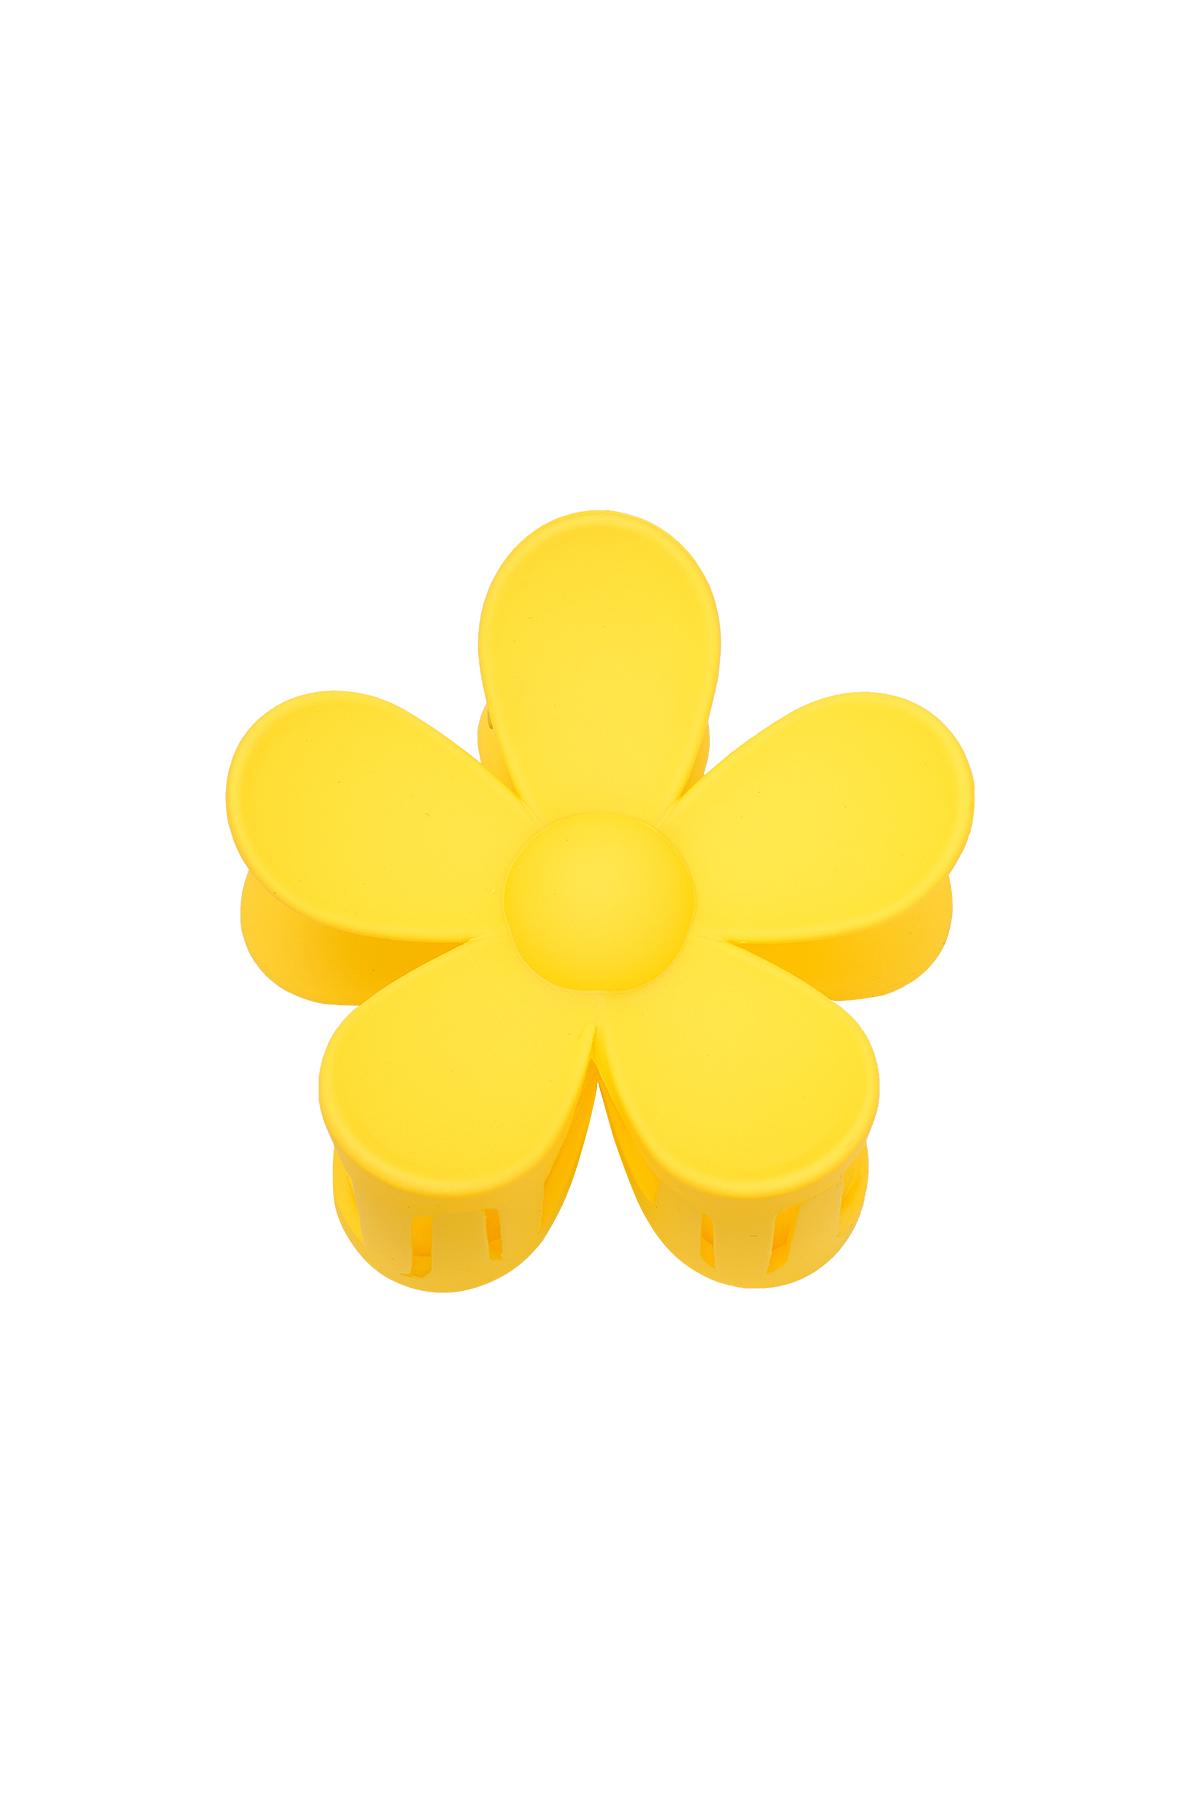 Saç tokası büyük çiçek Yellow Resin 